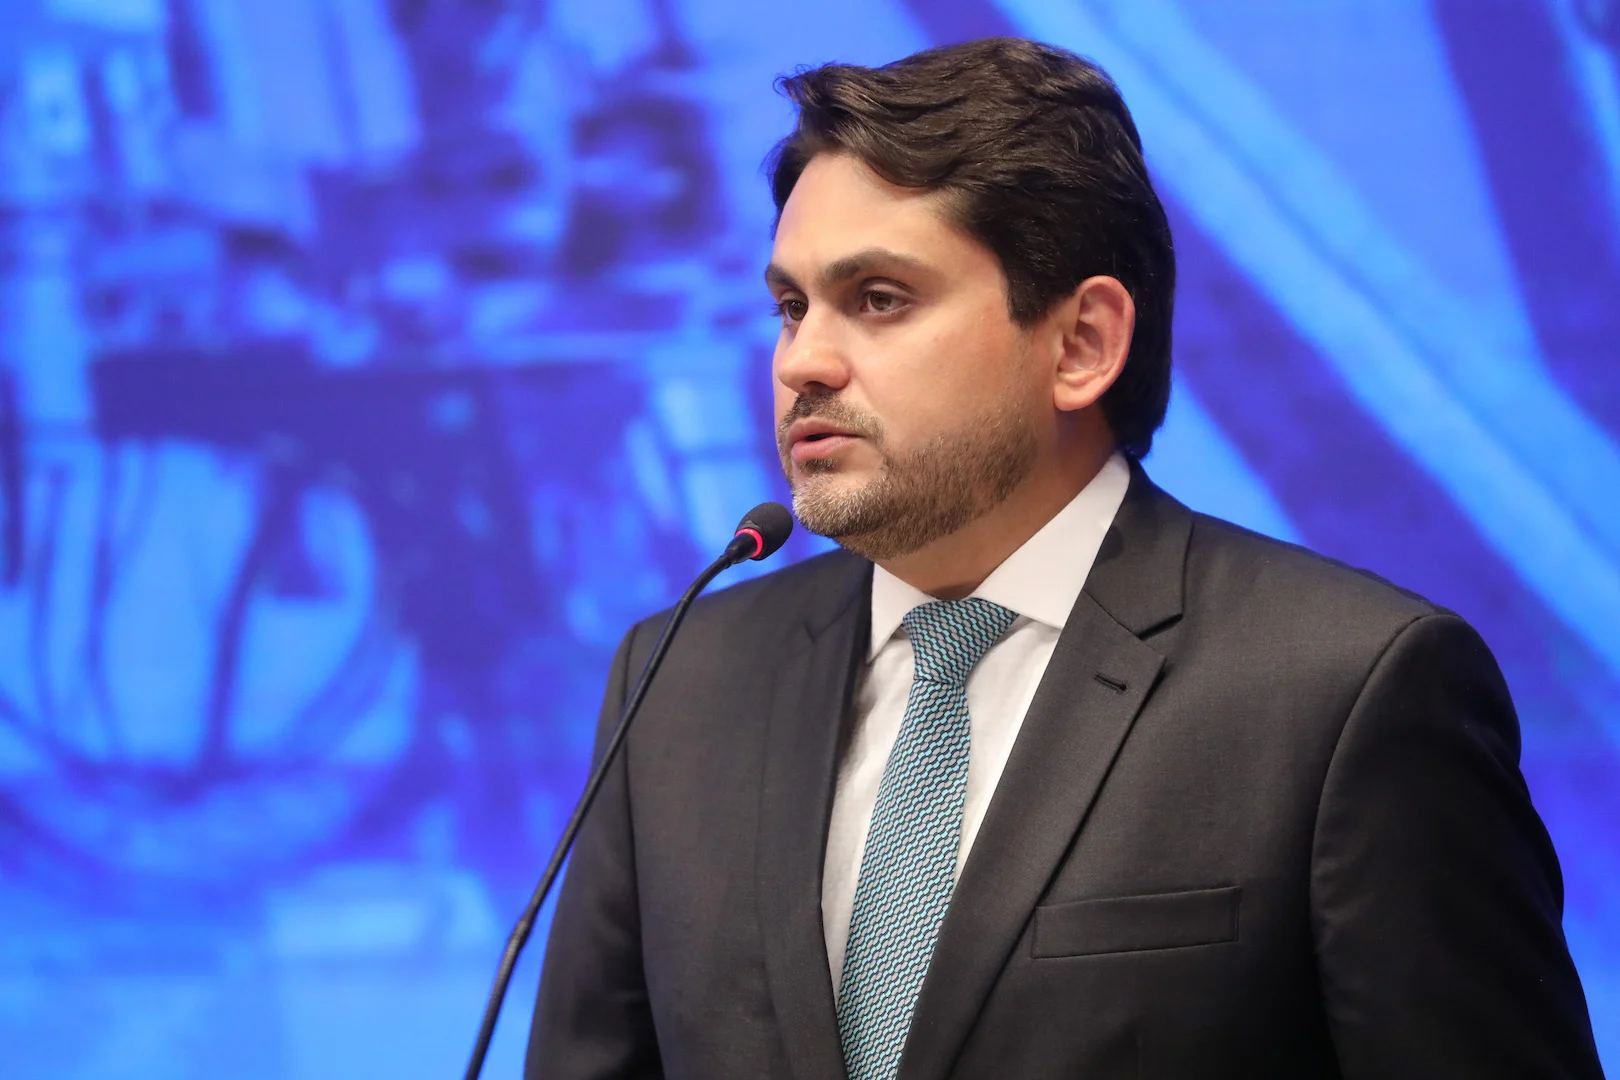 ESCÂNDALO: Juscelino Filho cairá do cargo de ministro das comunicações